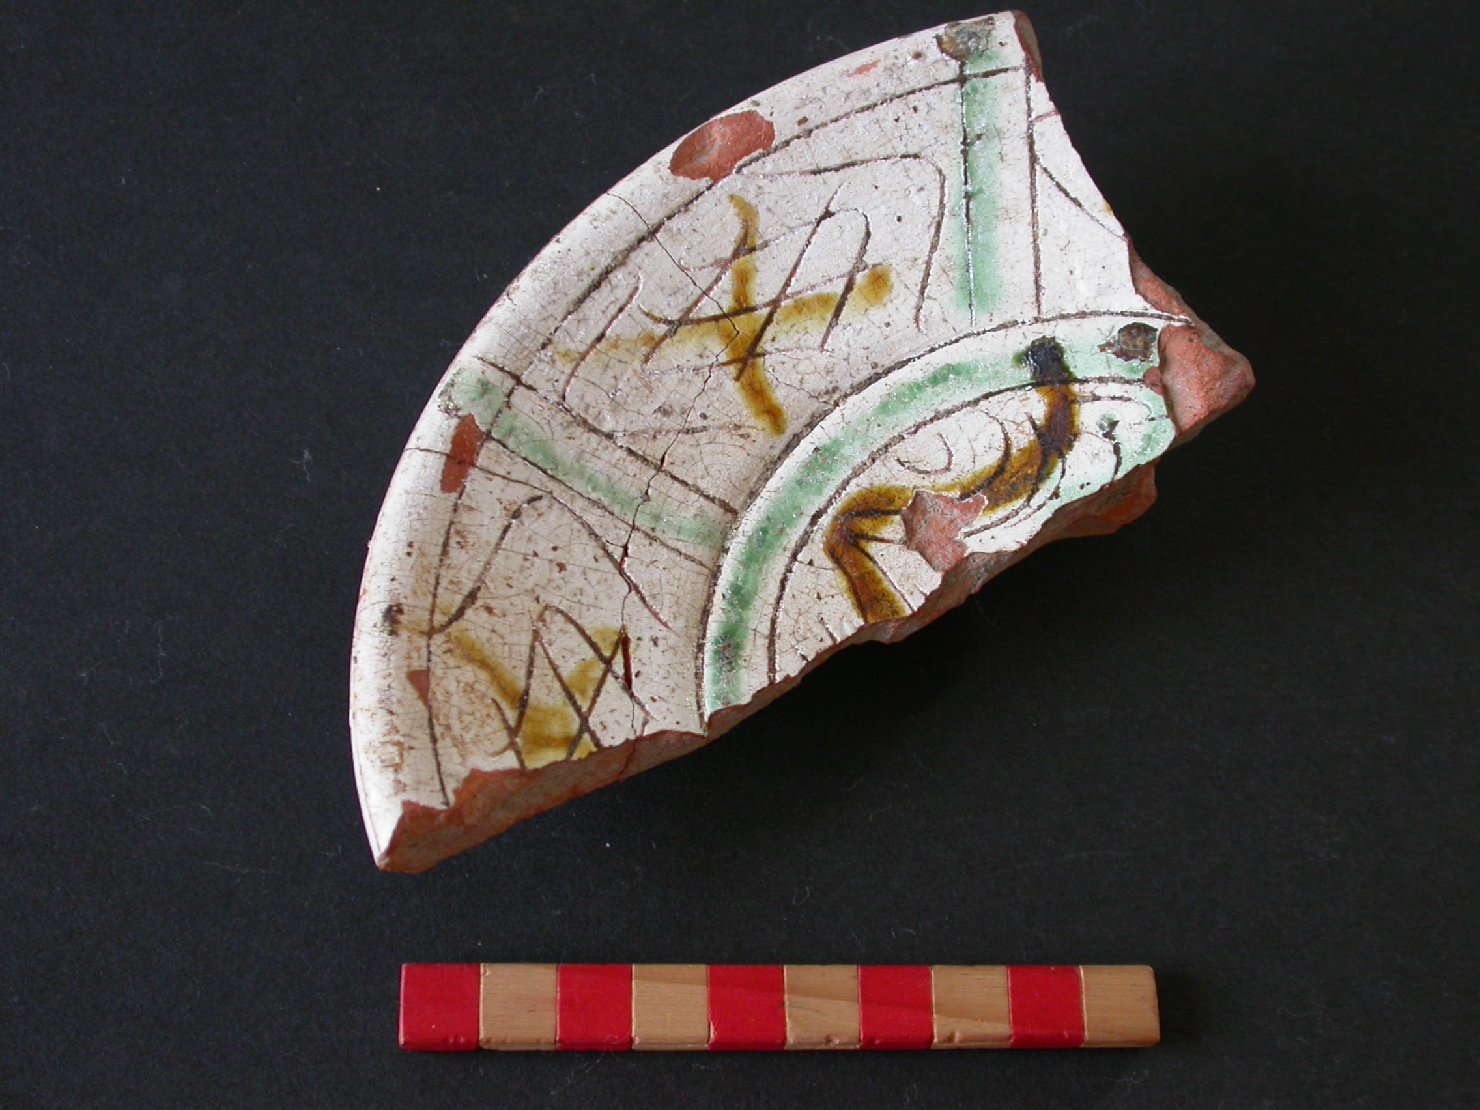 motivi decorativi geometrici (scodella, frammento) - ambito veneziano (fine/inizio secc. XIV/ XV)